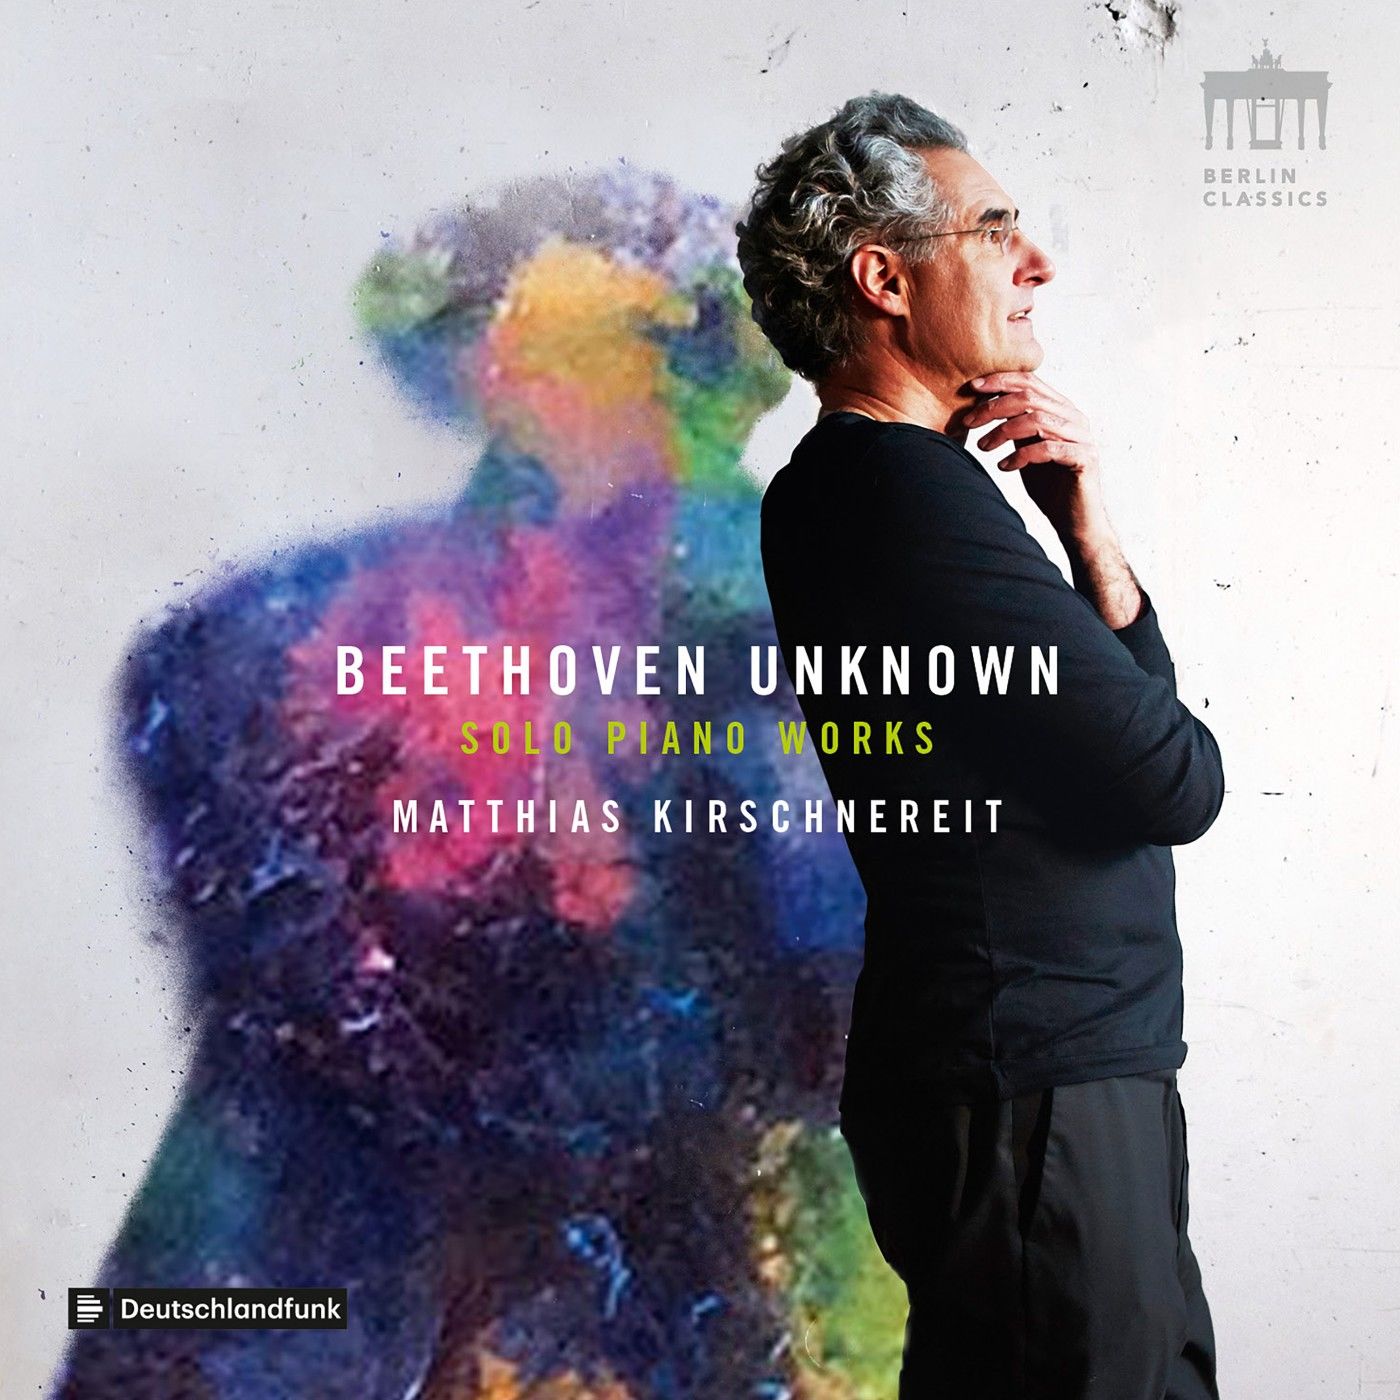 Matthias Kirschnereit - Beethoven: Unknown Solo Piano Works (2020) [FLAC 24bit/96kHz]